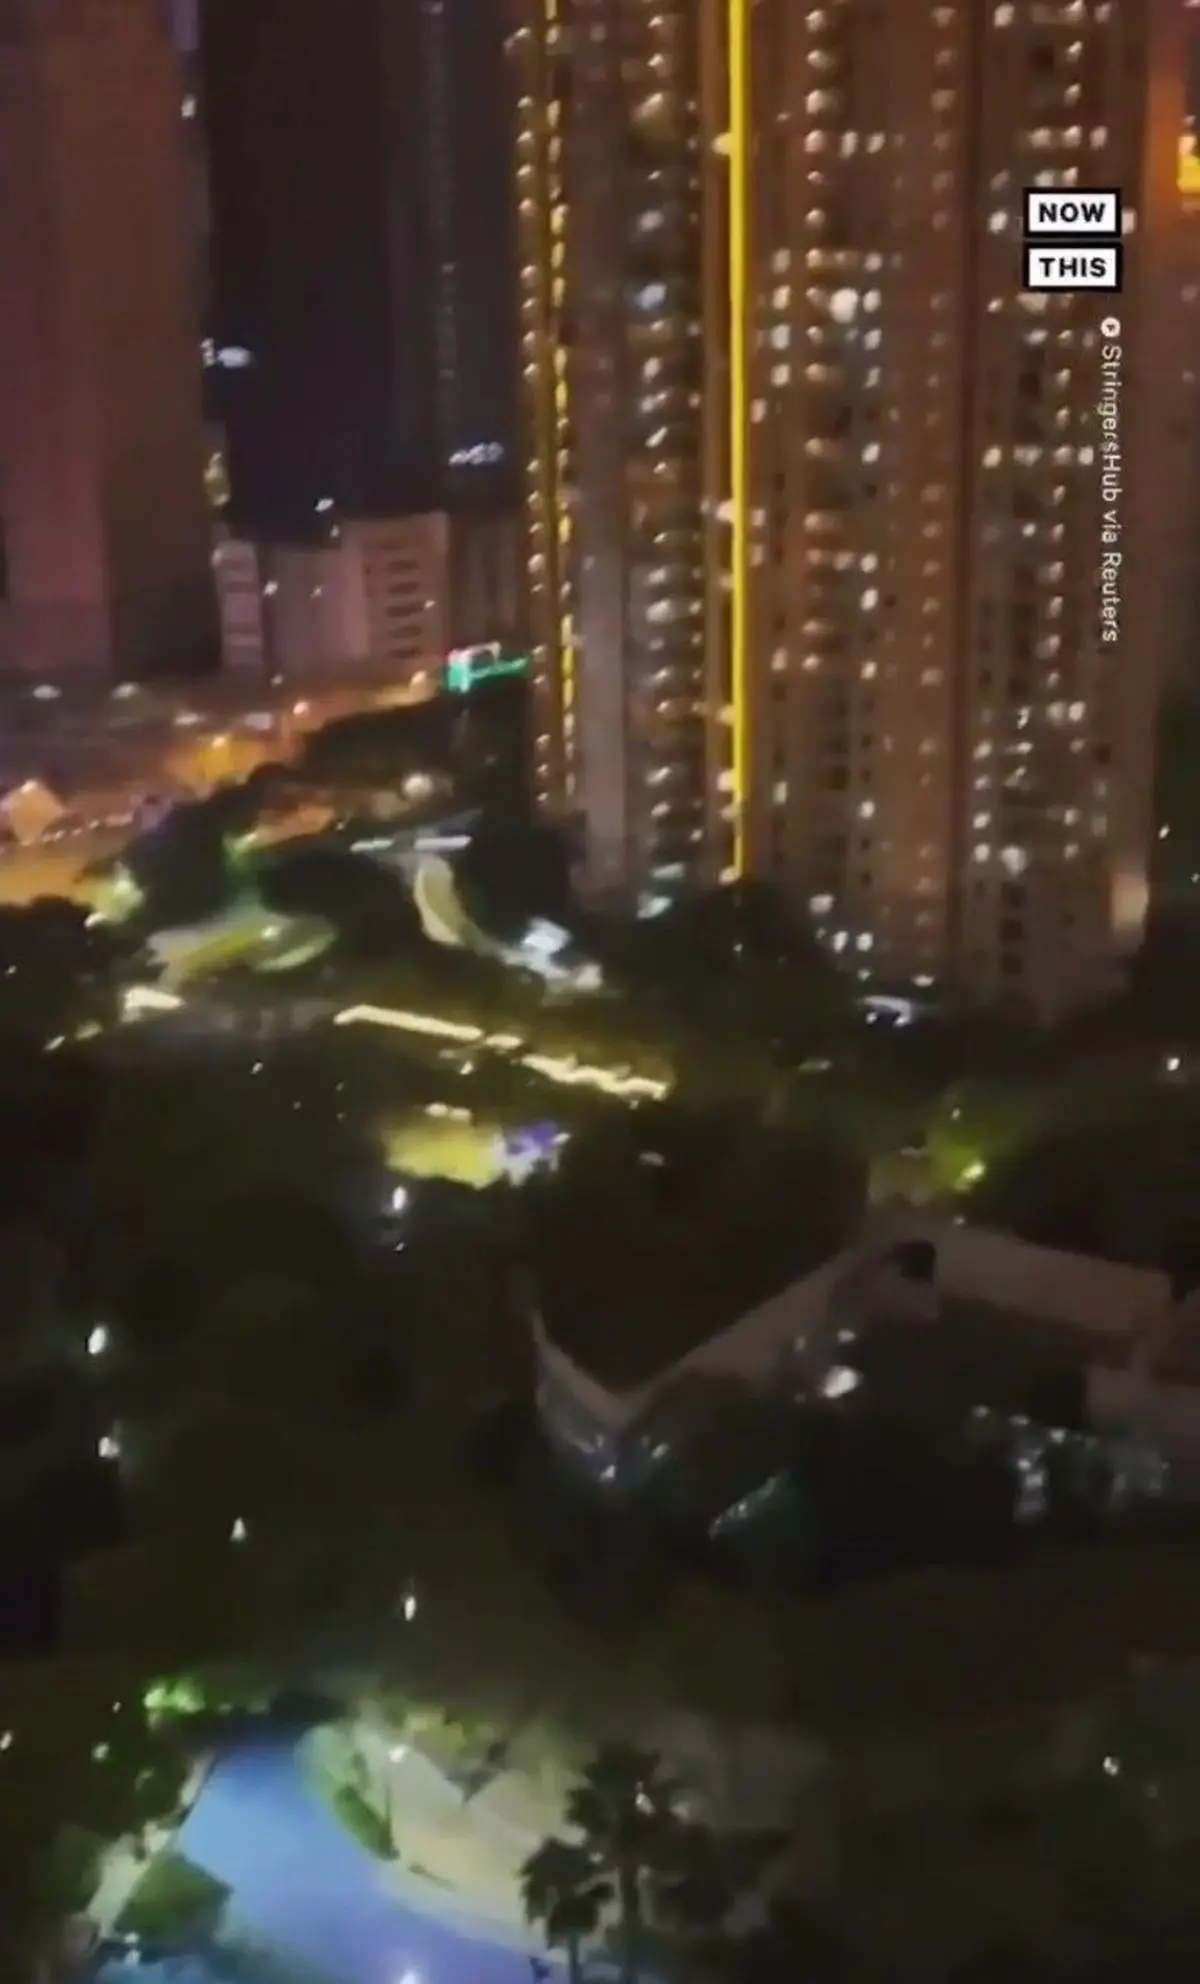 اجرای کنسرت بالکنی اهالی شانگهای در شرایط قرنطینه دوباره این شهر+ویدئو 